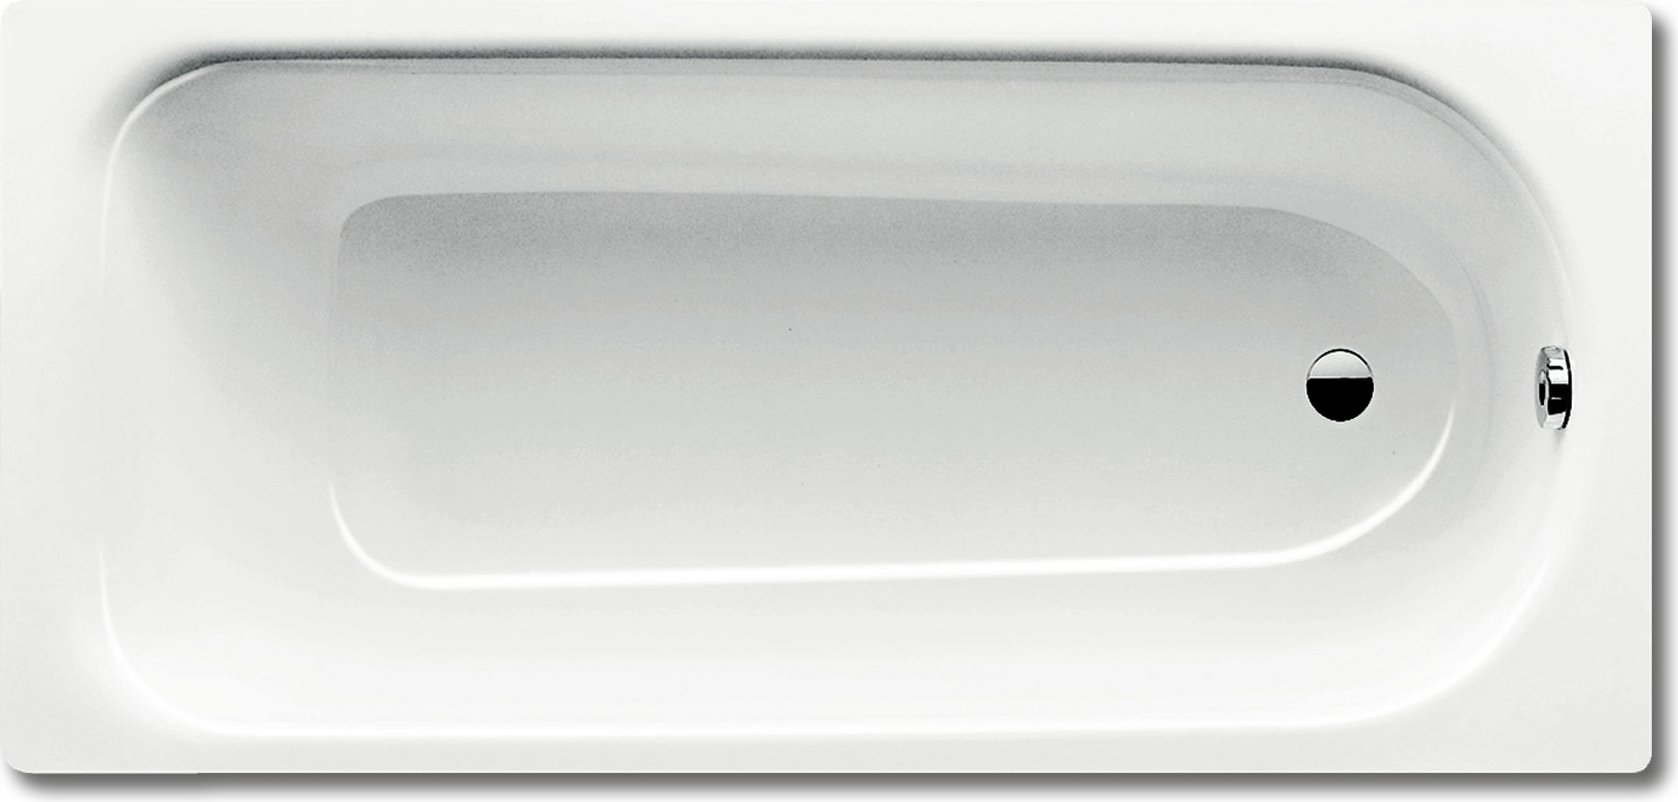 Стальная ванна Kaldewei Eurowa 310-1, белый, сталь  - купить со скидкой